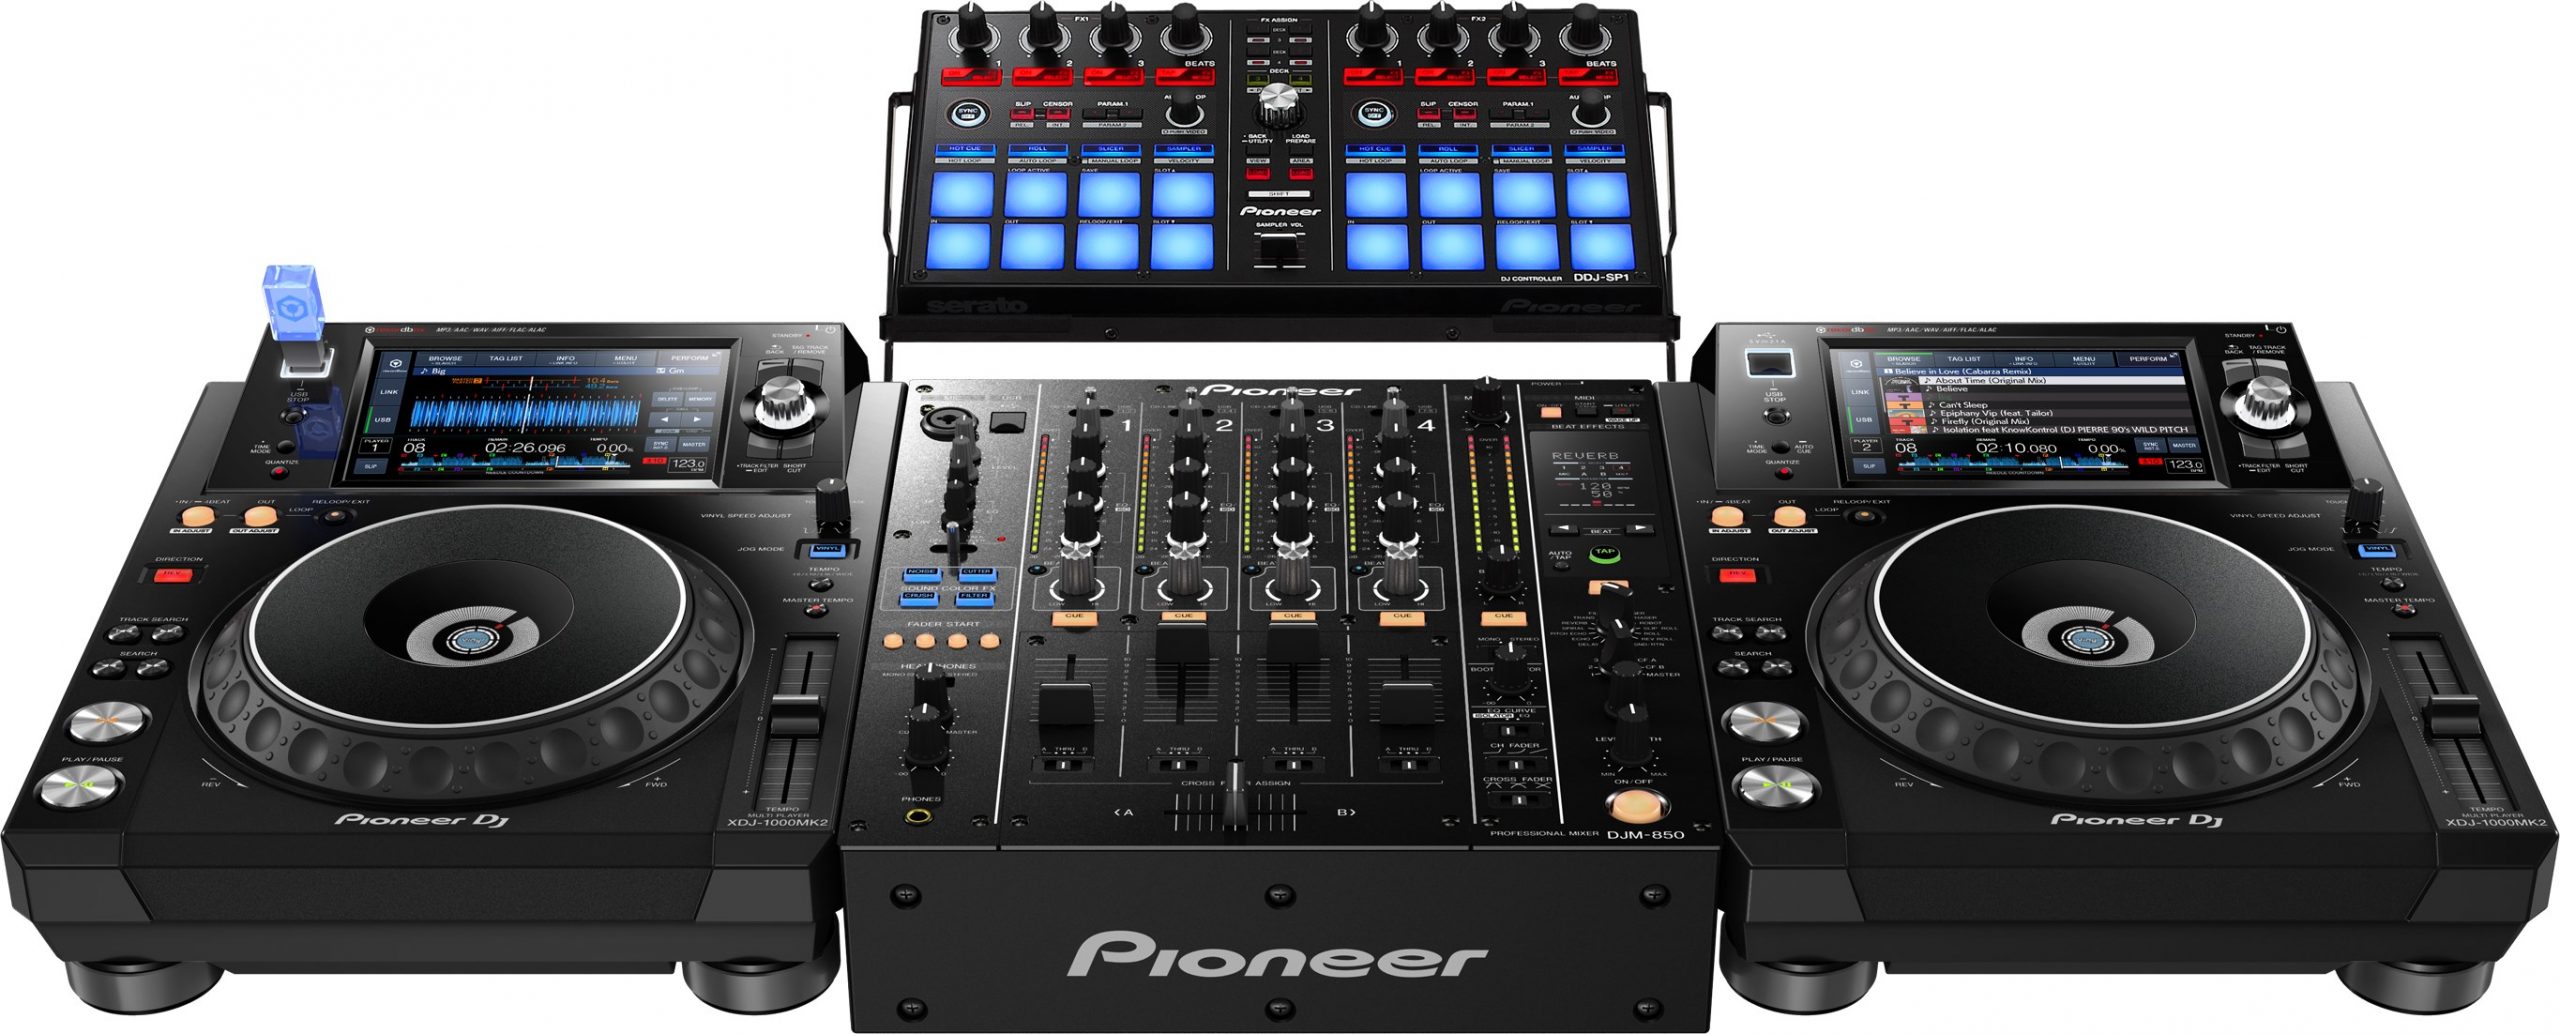 Pioneer DJ XDJ-1000MK2 Digital Media Player